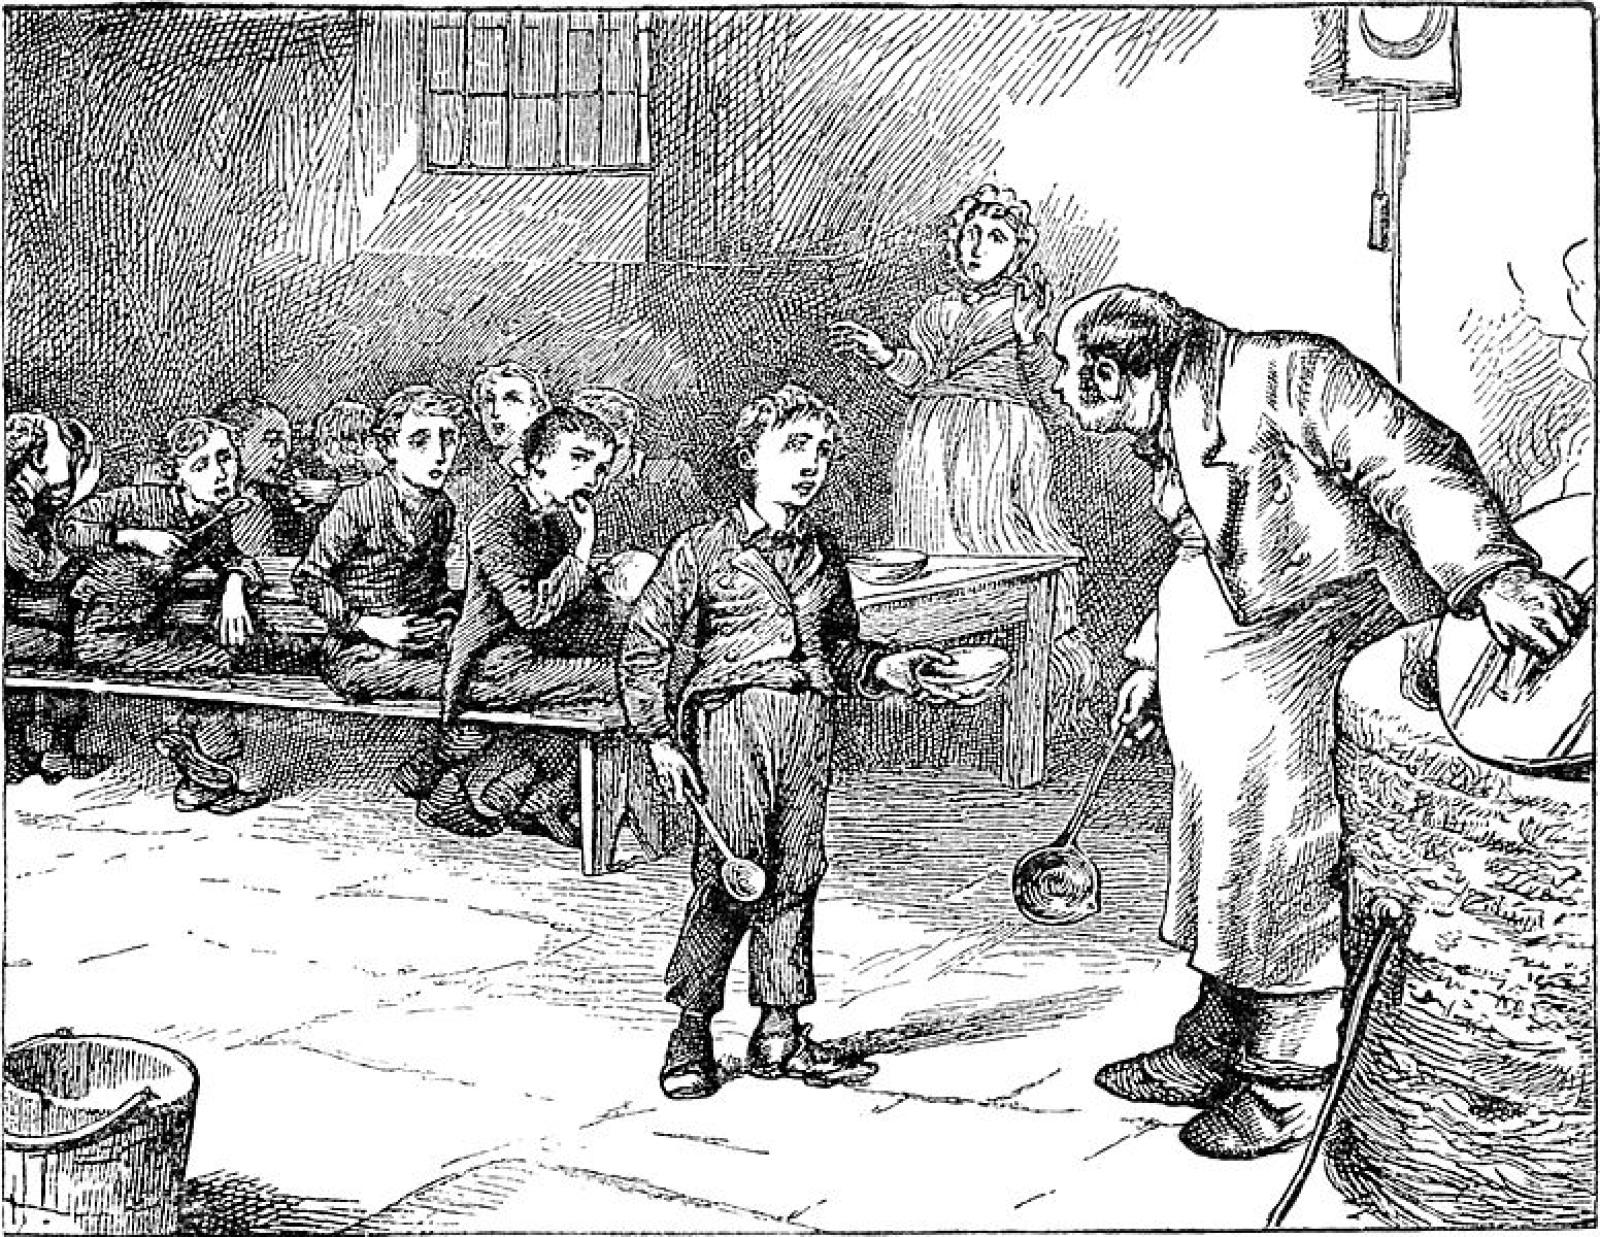 Illustrazione dall'edizione originale di "Oliver Twist"